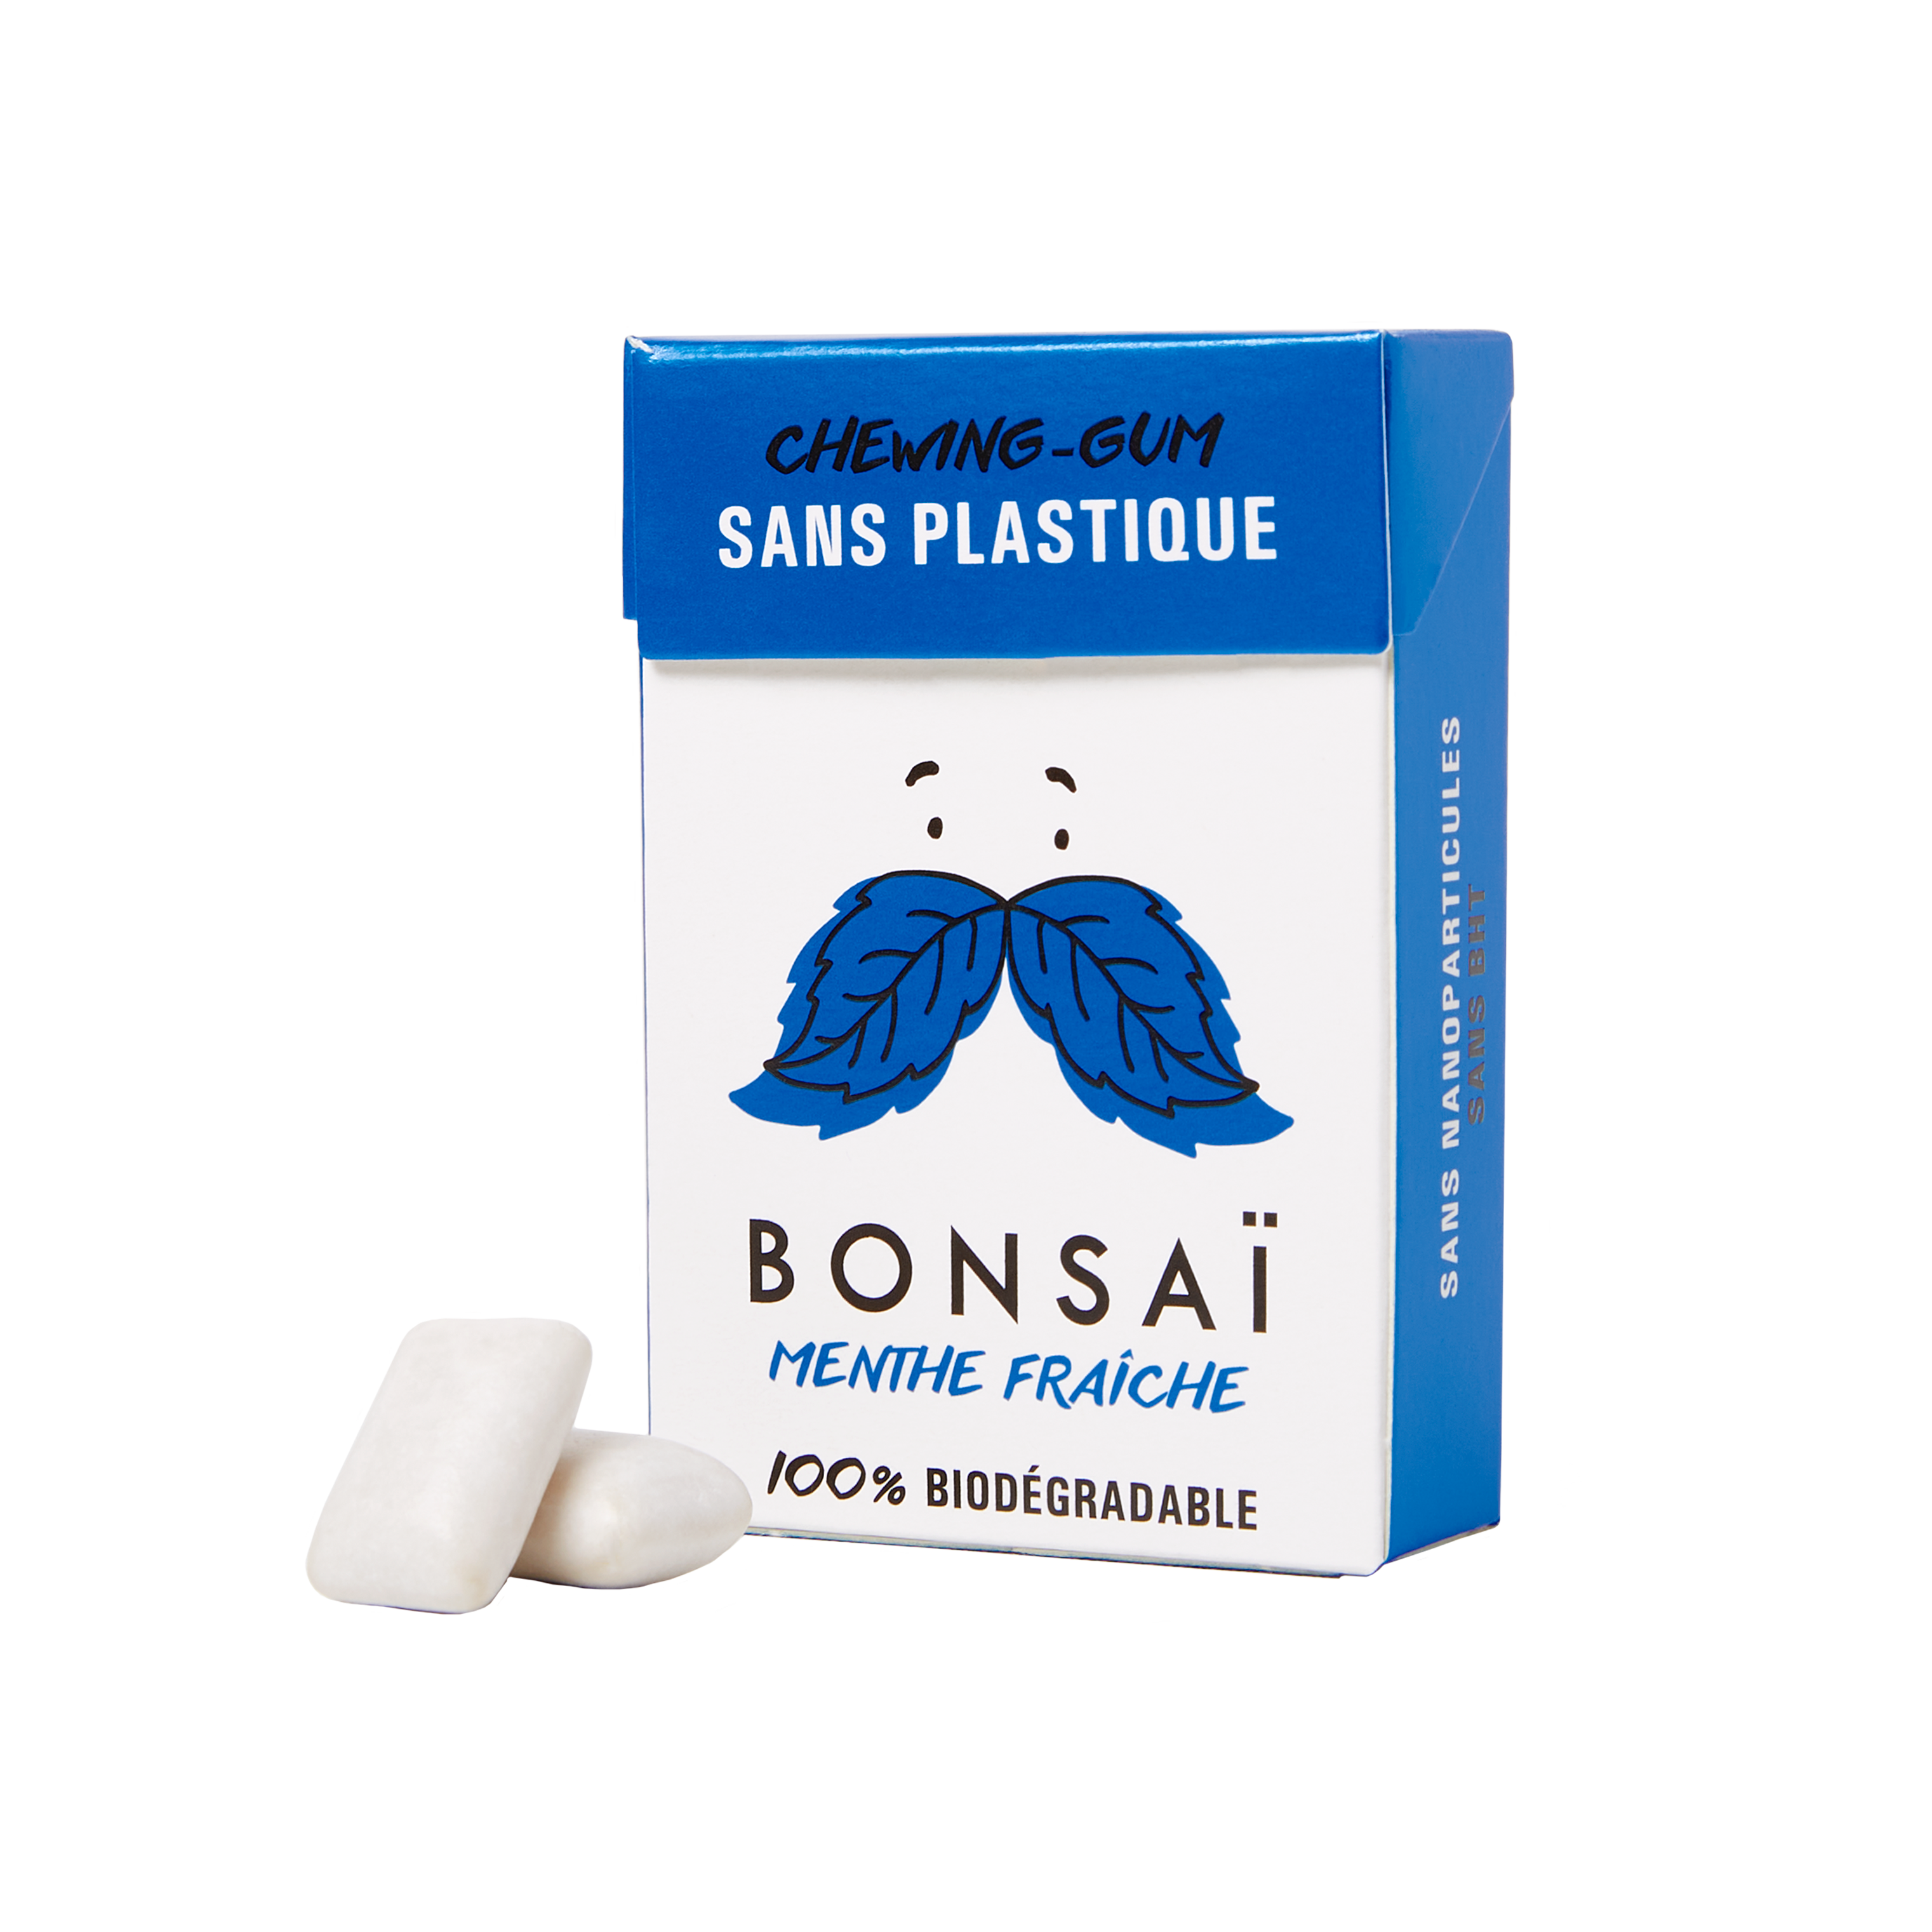 BONSAI: natural fresh mint chewing gum 